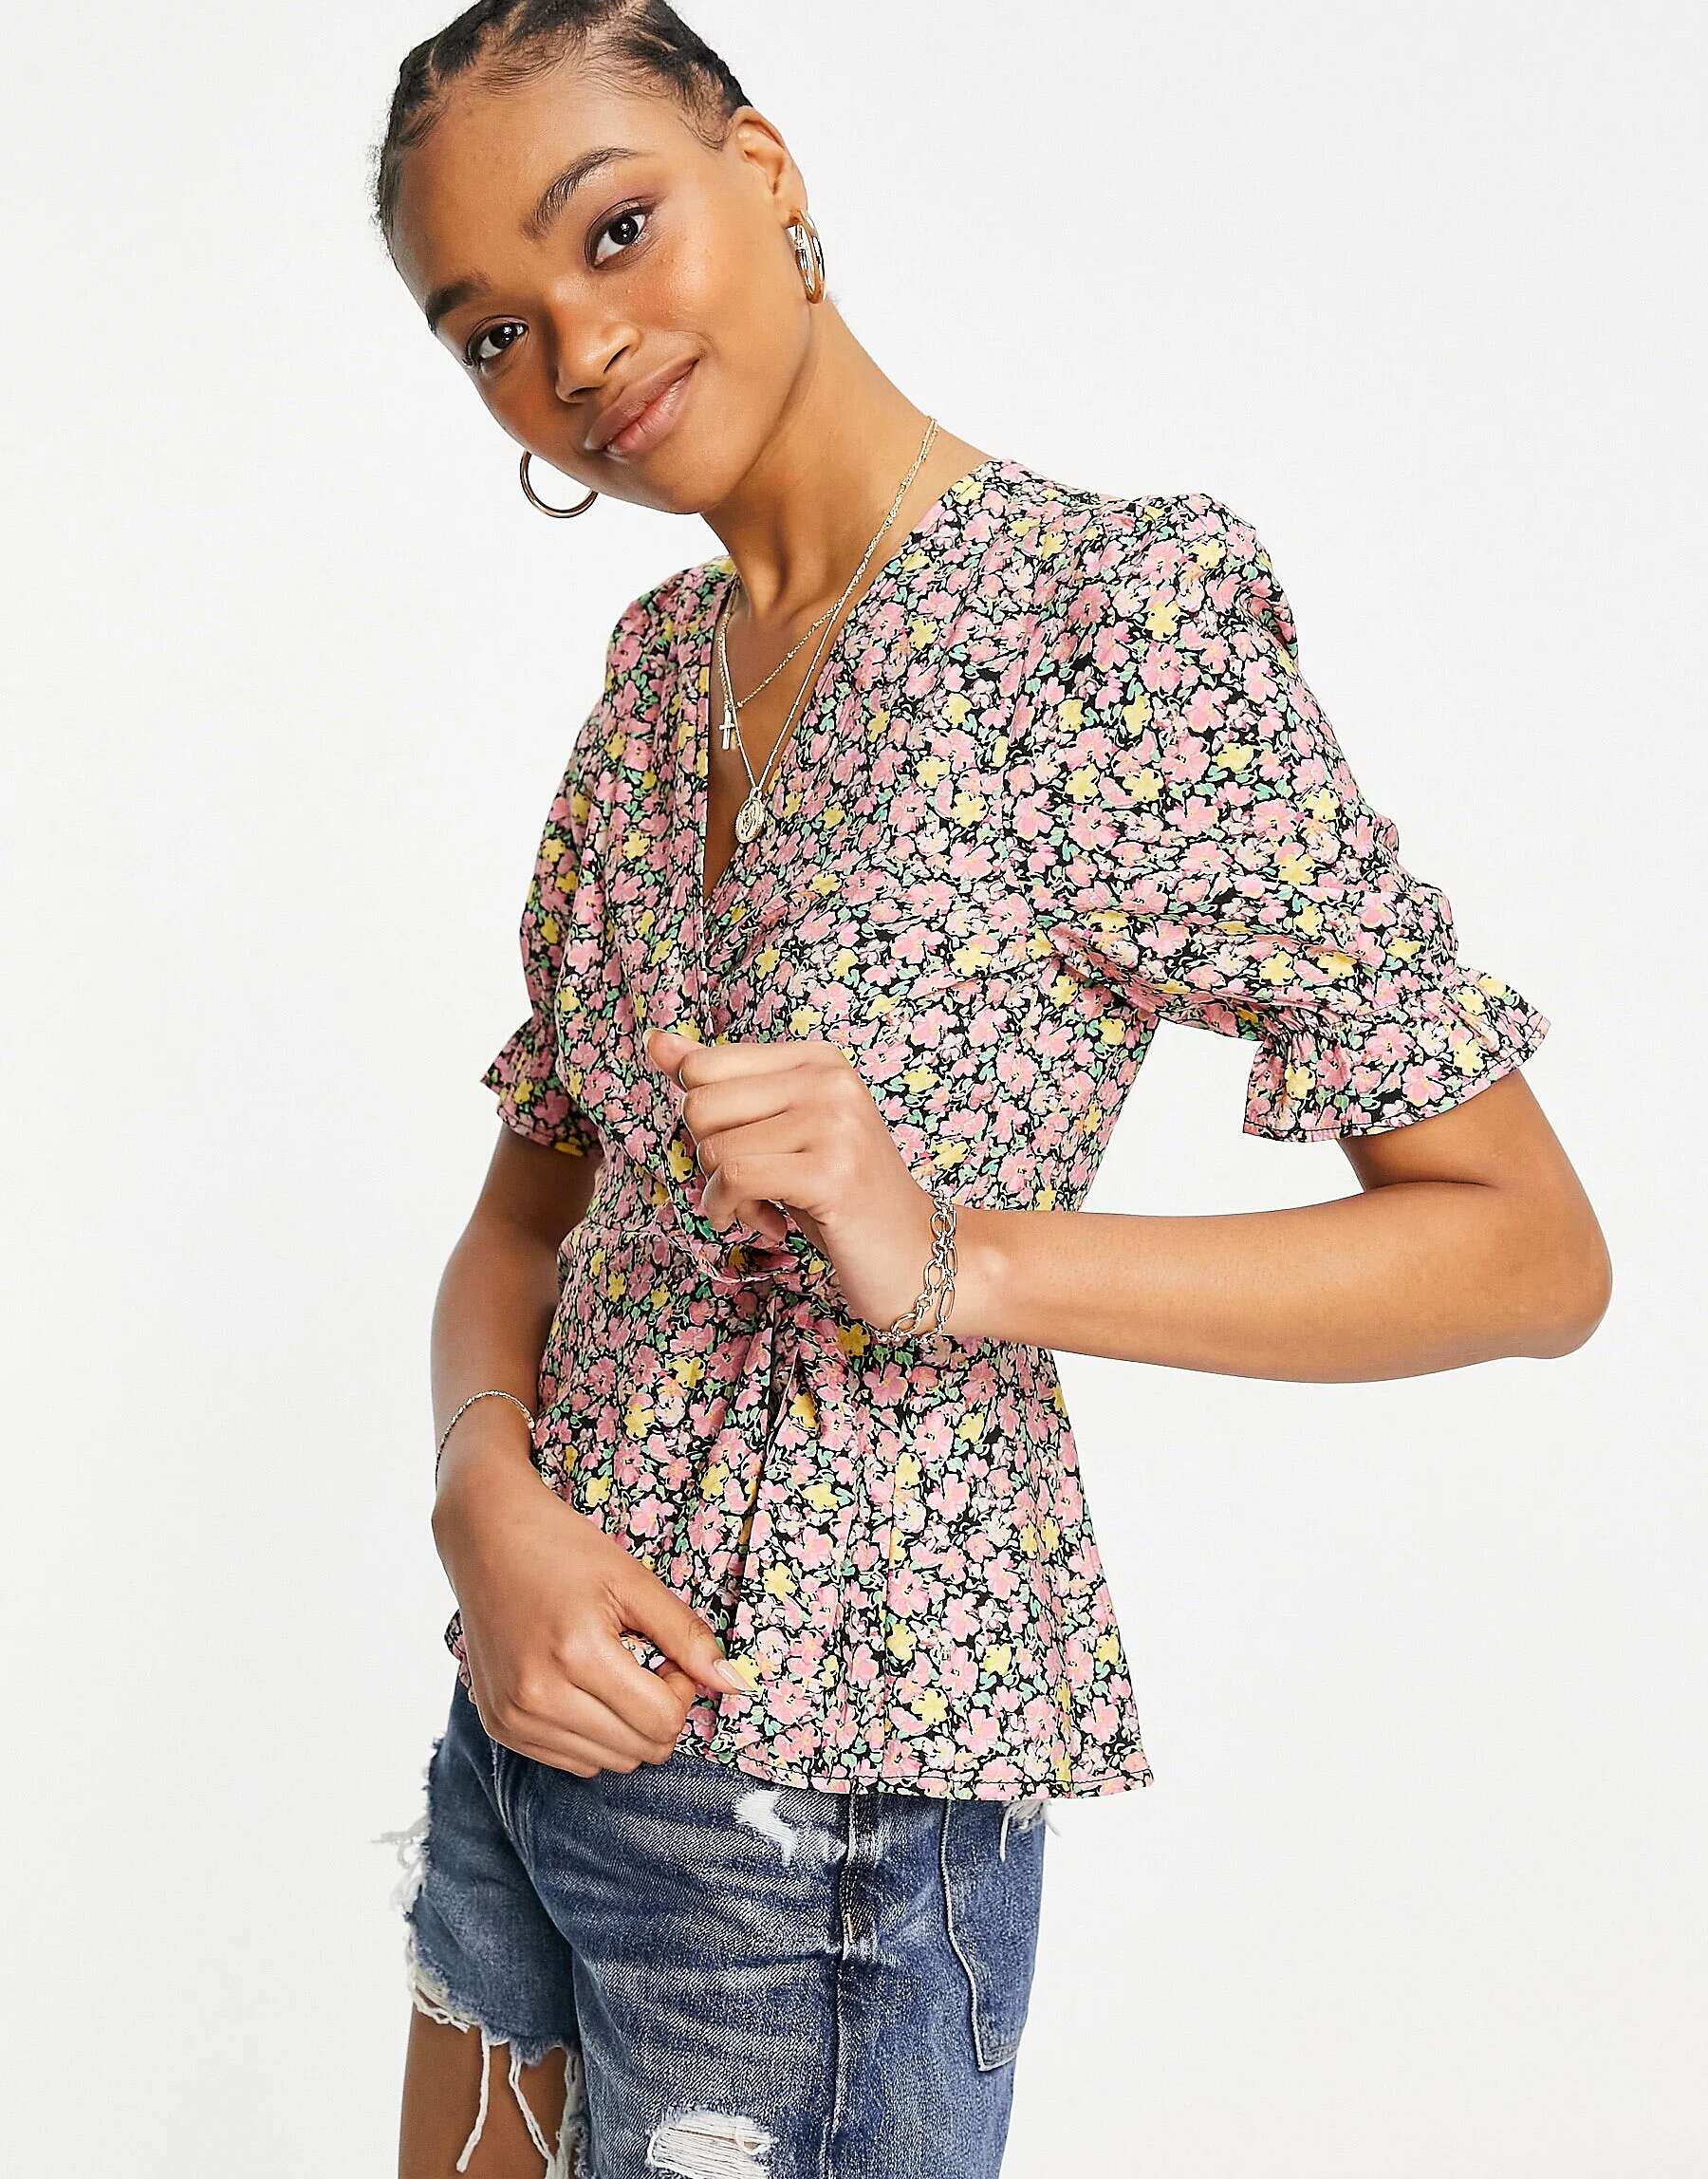 Блузка с запахом Vero Moda с ярким цветочным принтом атласная блузка с высоким воротником vero moda синего цвета с цветочным принтом